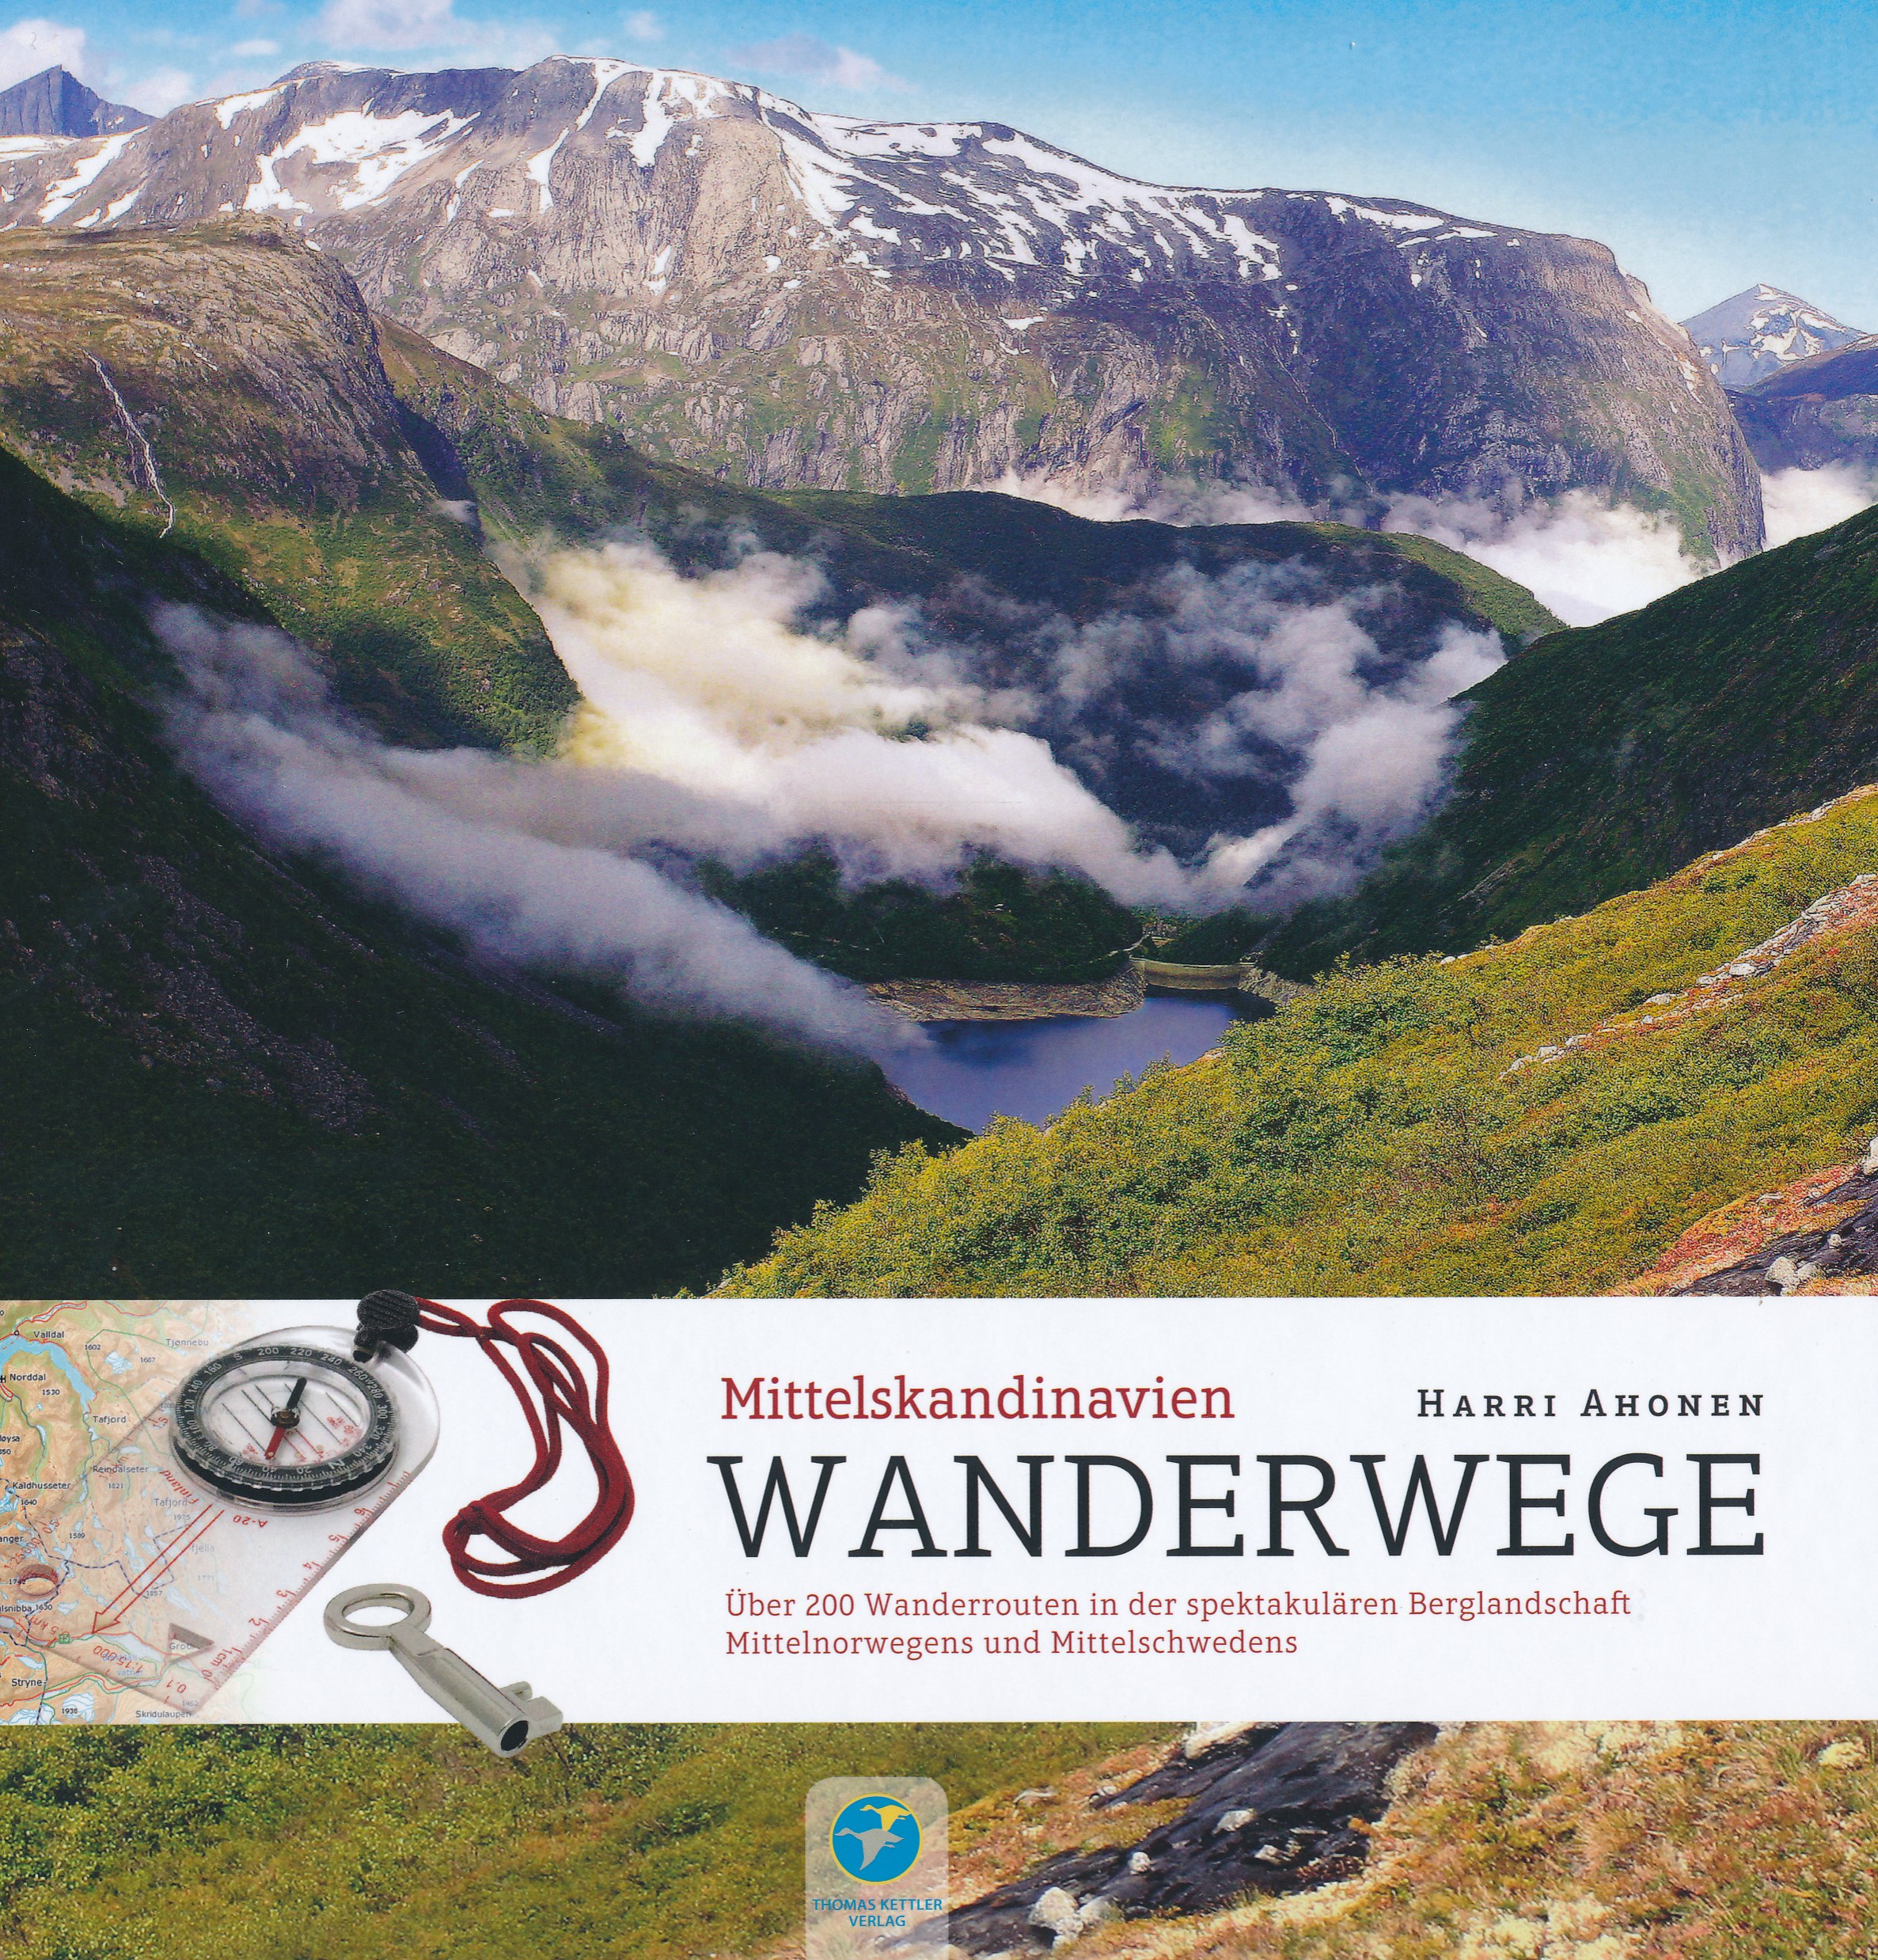 Wandelgids Wanderwege Mittelskandinavien - Noorwegen en Zweden | Kettler Verlag de zwerver